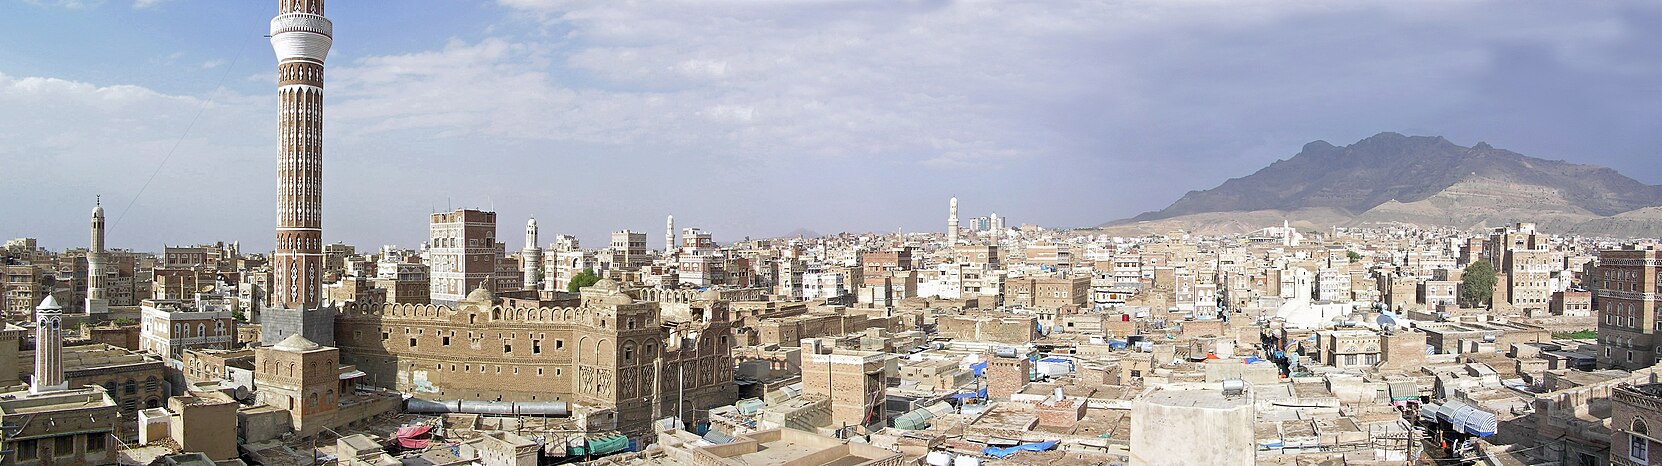 Вікіпедія:Проект:Ємен